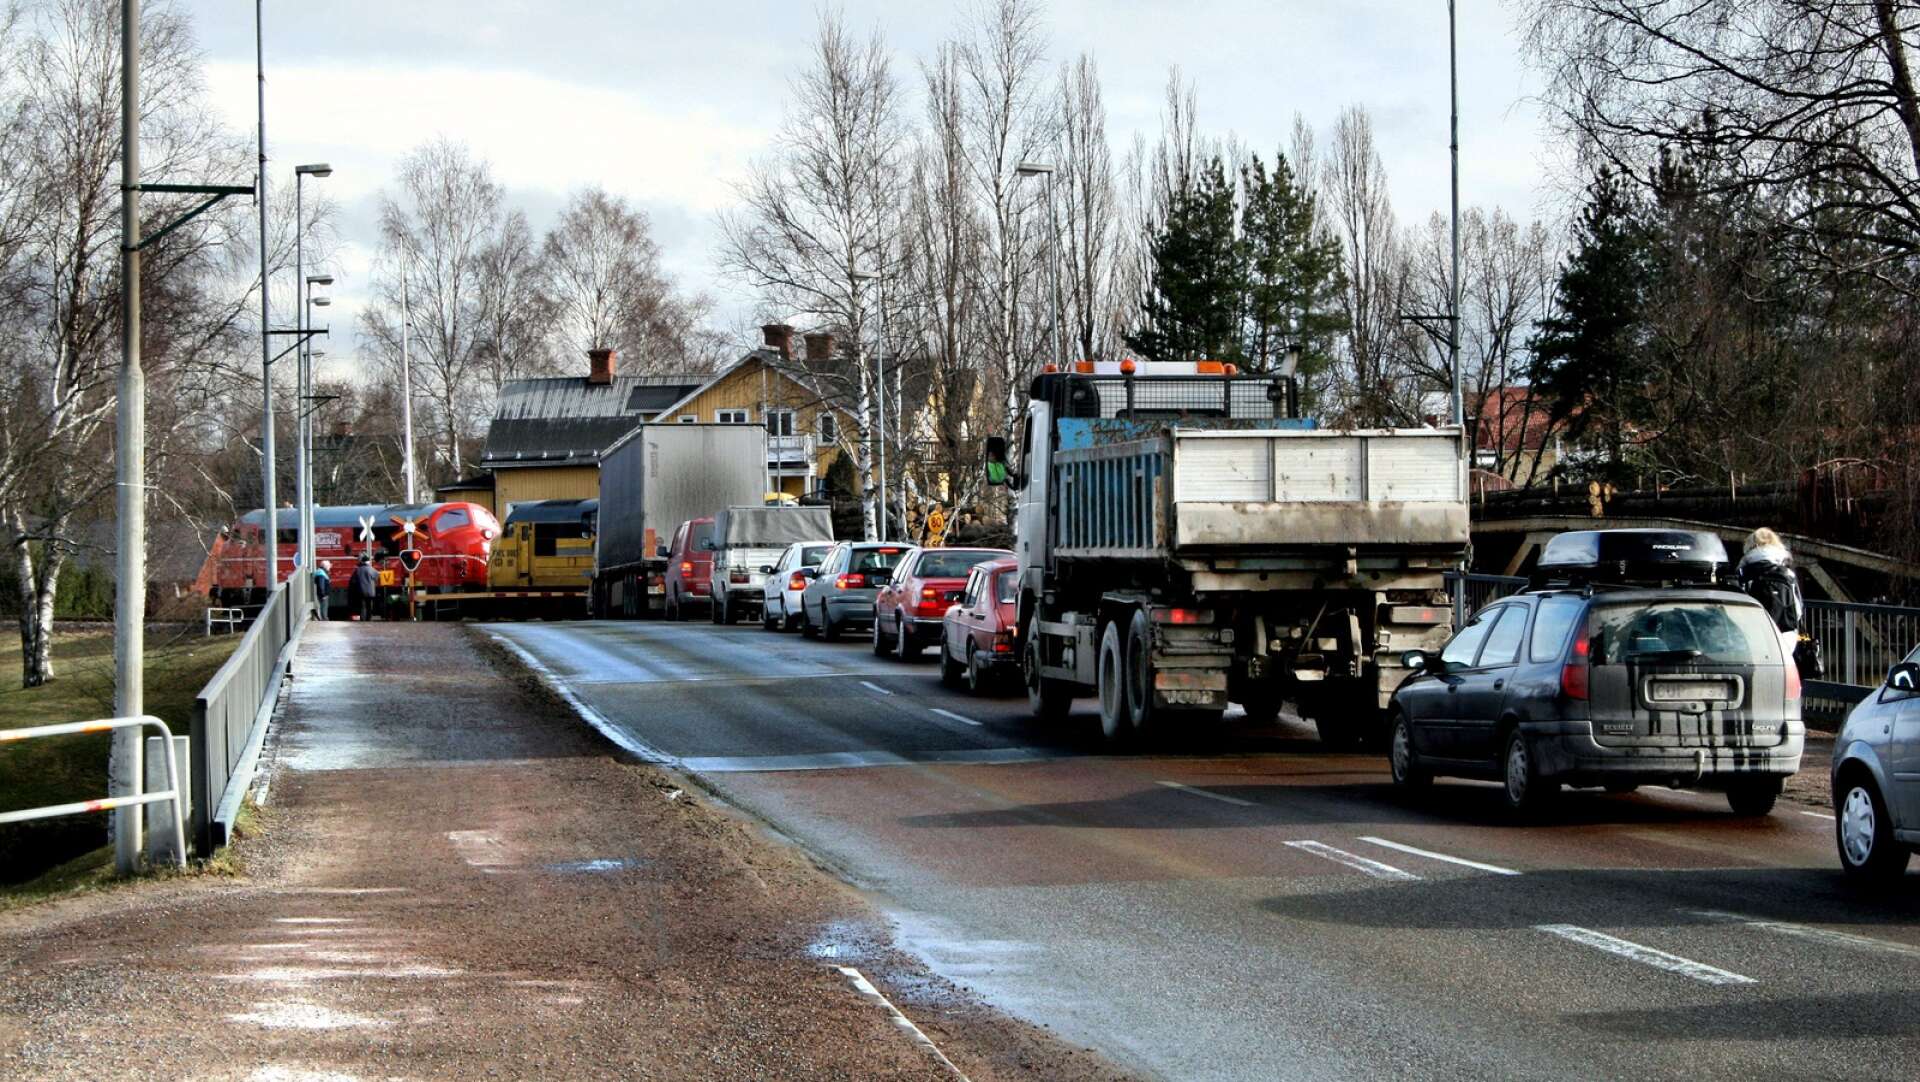 Trafikverkets planer på att renovera Sundsbron i Sunne 2025 ligger fast. Avsikten är bli klar med alla detaljer kring det omdiskuterade projektet redan under 2023.